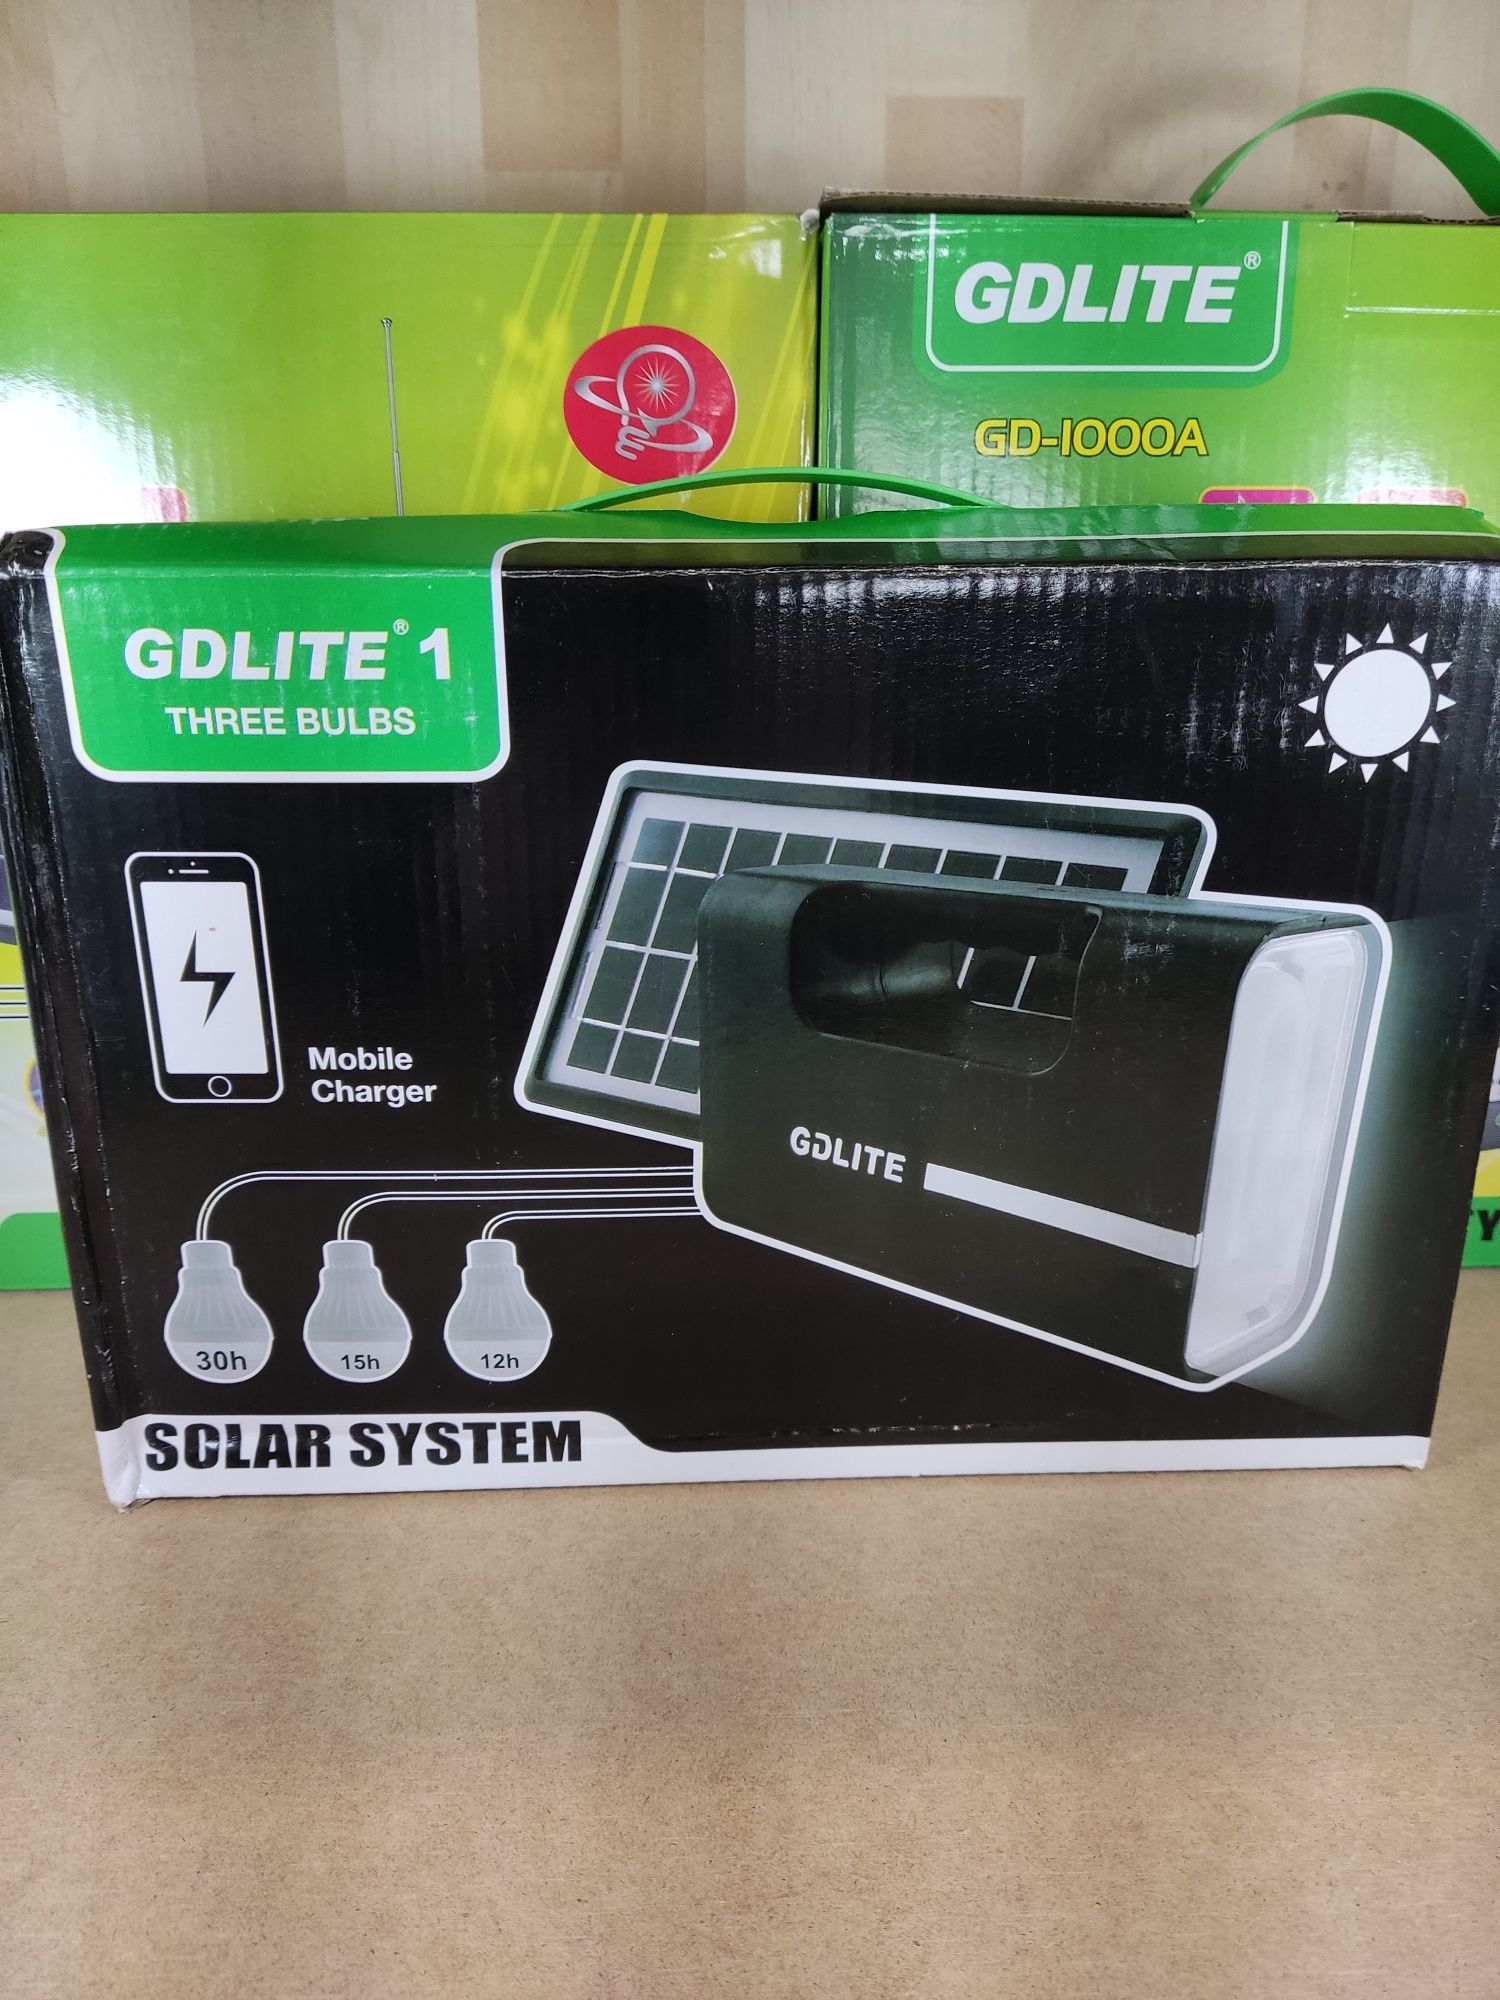 Солнечная станция GDLite GD-1 солнечная панель с фонарём и зарядкой !!